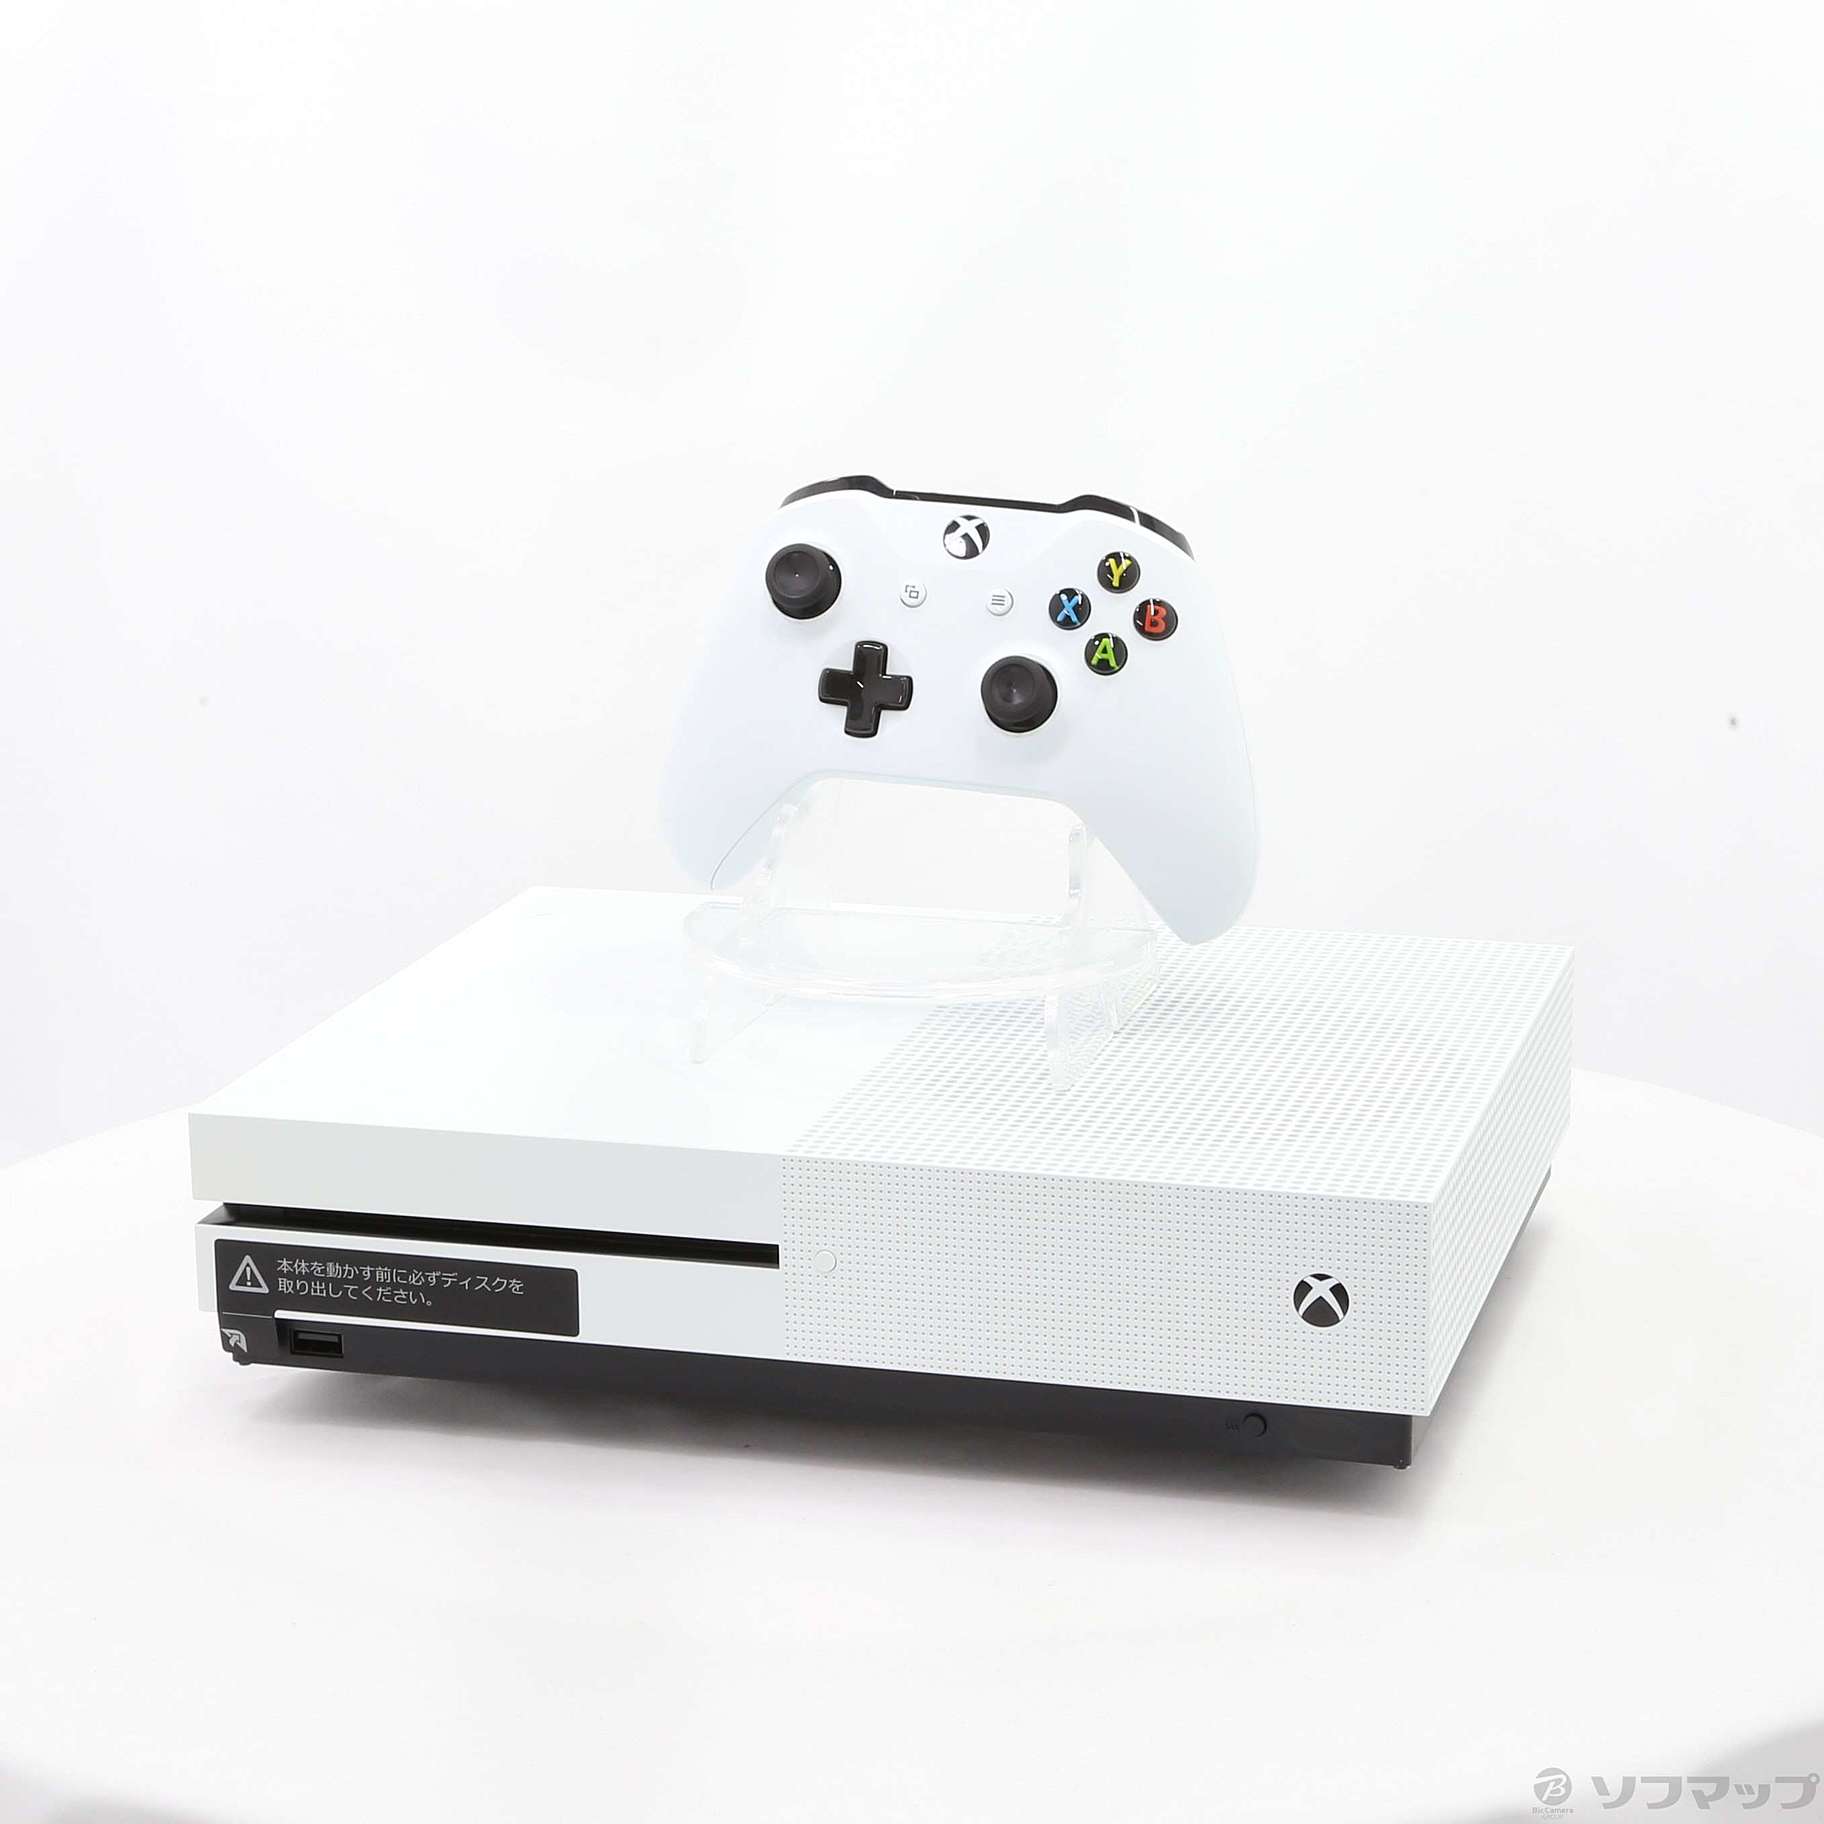 Microsoft Xbox One S 500 GB